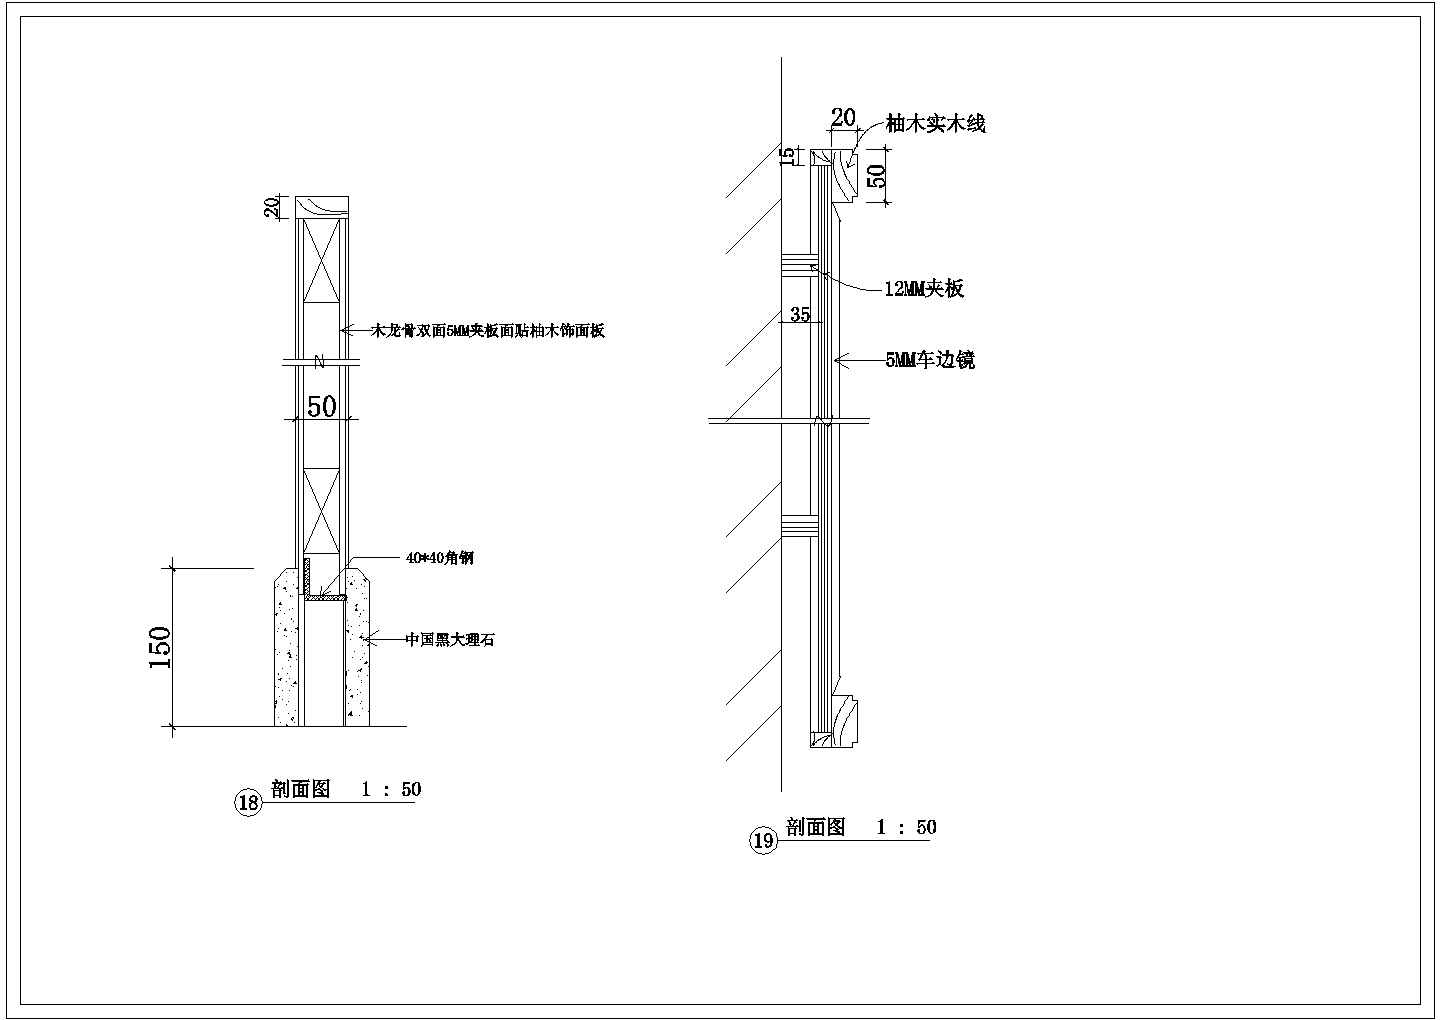 上海某会所大型KTV包房潜艇装修设计cad图